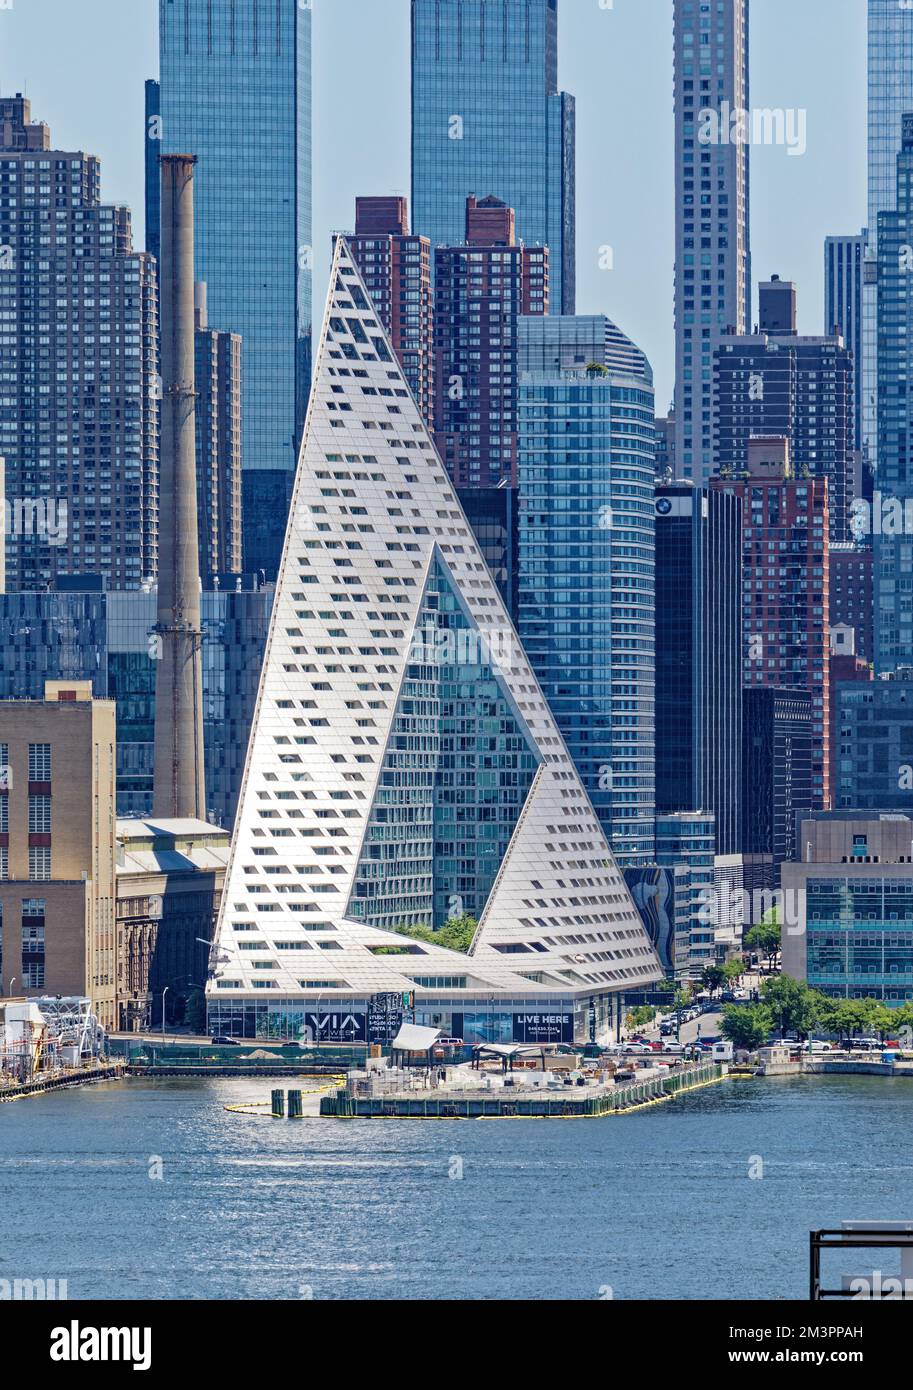 DIE VIA 57 West ist eine 34-stöckige Wohnanlage, die von der Bjarke Ingels Group (BIG) entworfen wurde. Die hohle Tetraeder-Form ist einzigartig in New York. Stockfoto